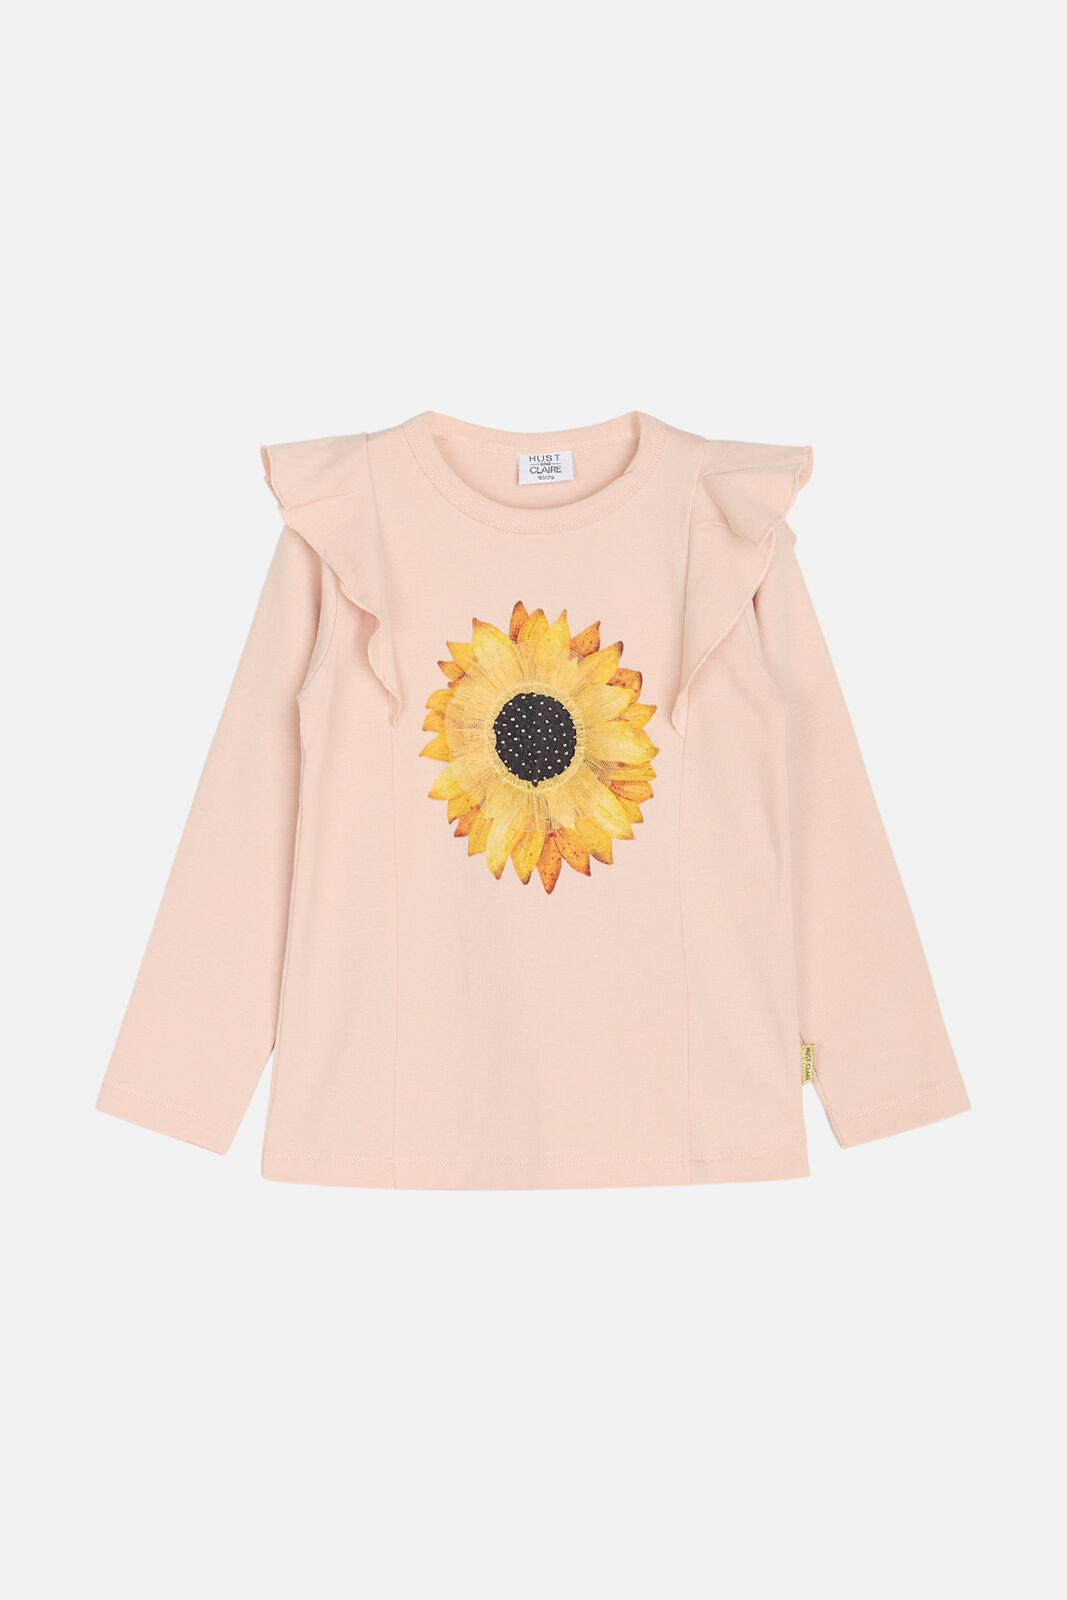 Hust & Claire Langarm-T-Shirt mit Sonnenblumen-Print und Rüschen-Details-Mokkini Kindermode